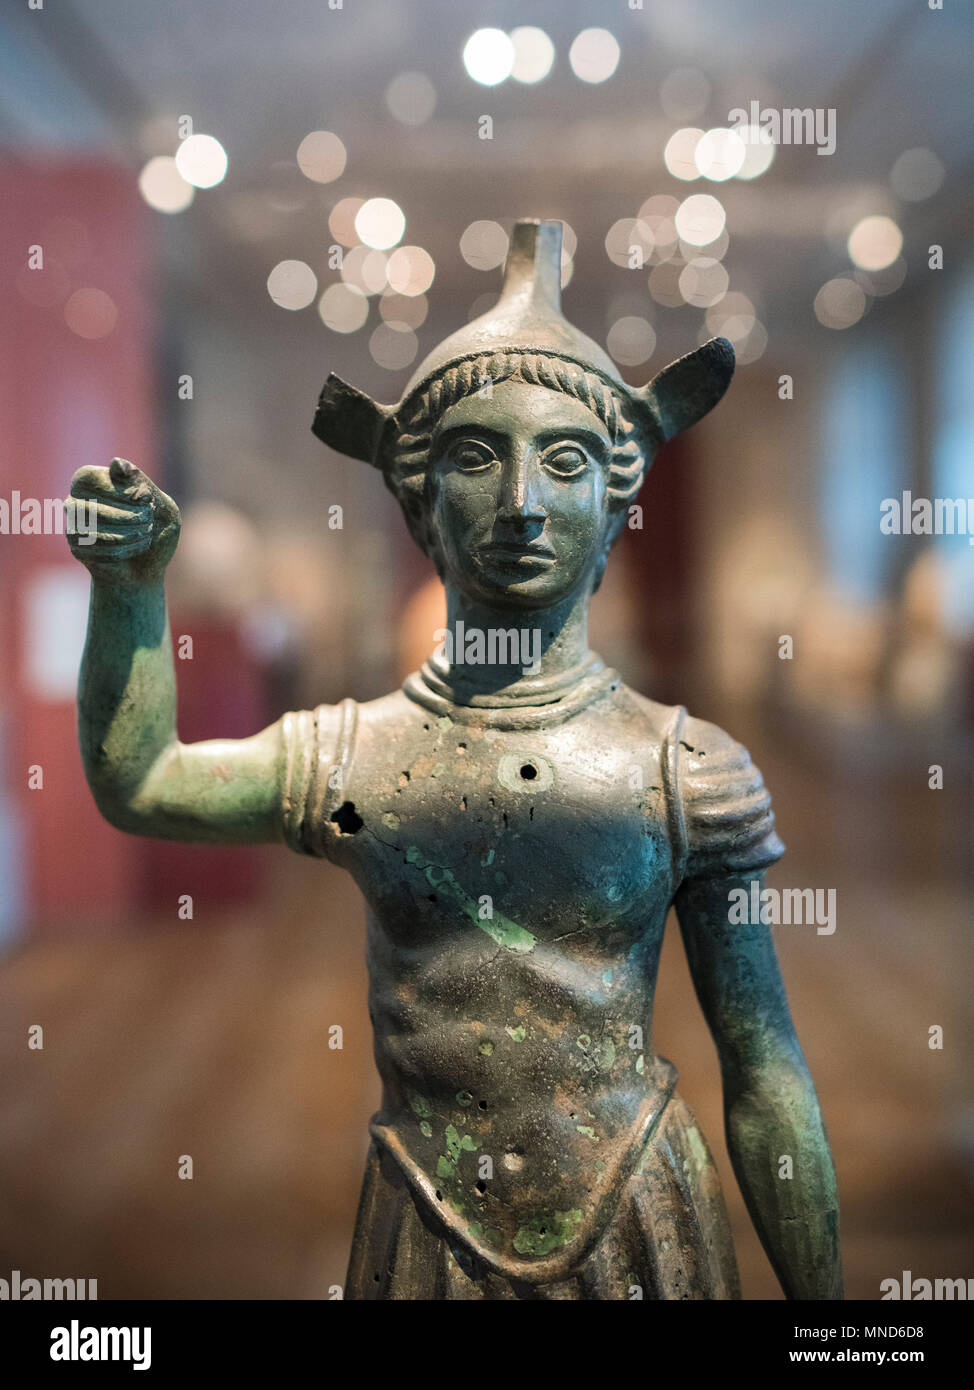 Berlino. Germania. Statuetta etrusca di un guerriero del V secolo a.c. in bronzo fuso, Altes Museum. Il giovane guerriero indossa armatura e casco, la guancia Foto Stock